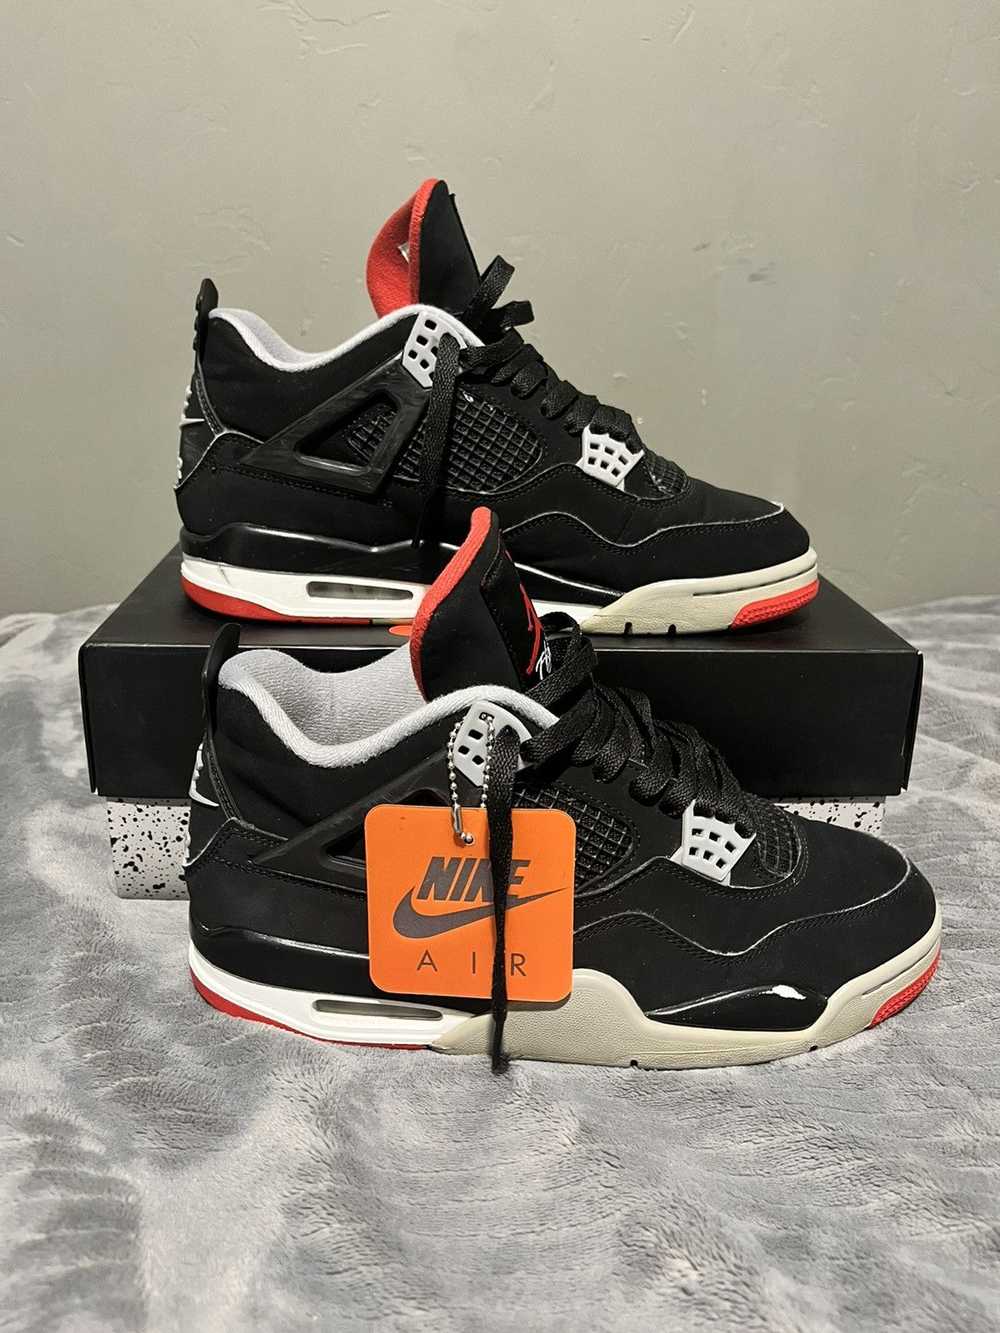 Jordan Brand × Nike Air Jordan retro 4 bred - image 11